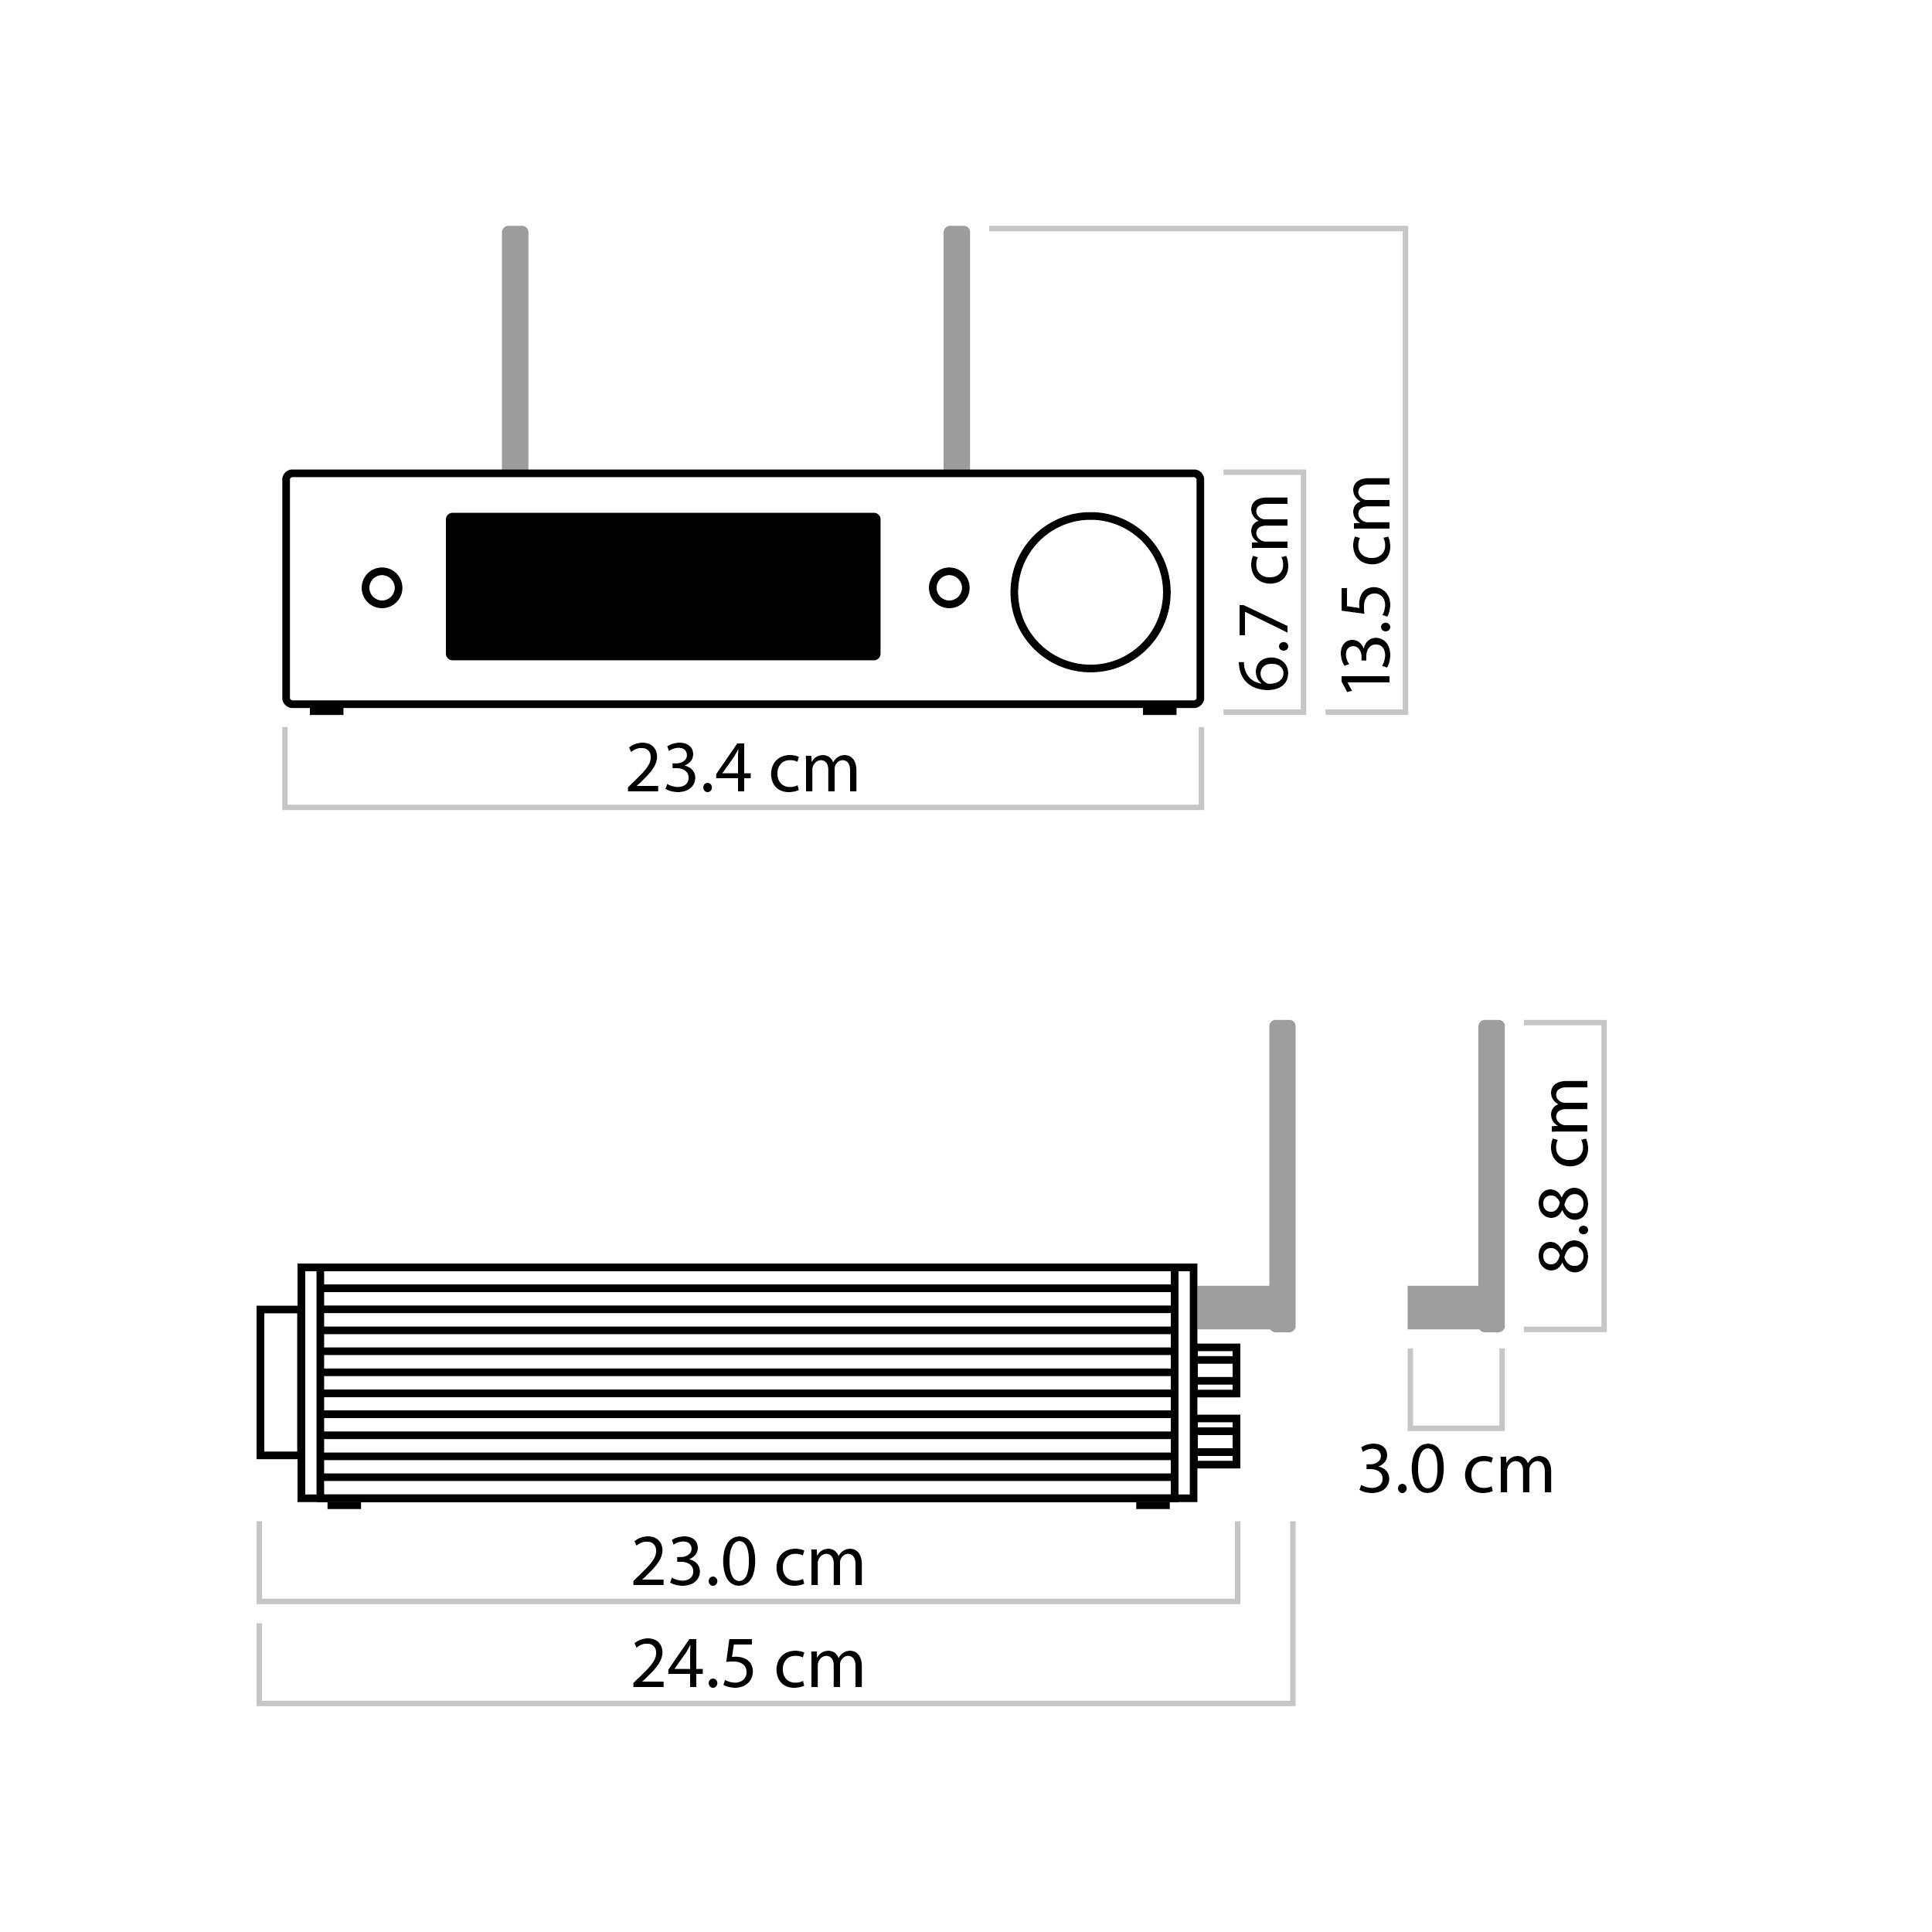 Nubert nuConnect ampX Vollverstärker Stereo Sound, (Wide Calibration, 130 2x Vollverstärker) W, X-Room Schwarz